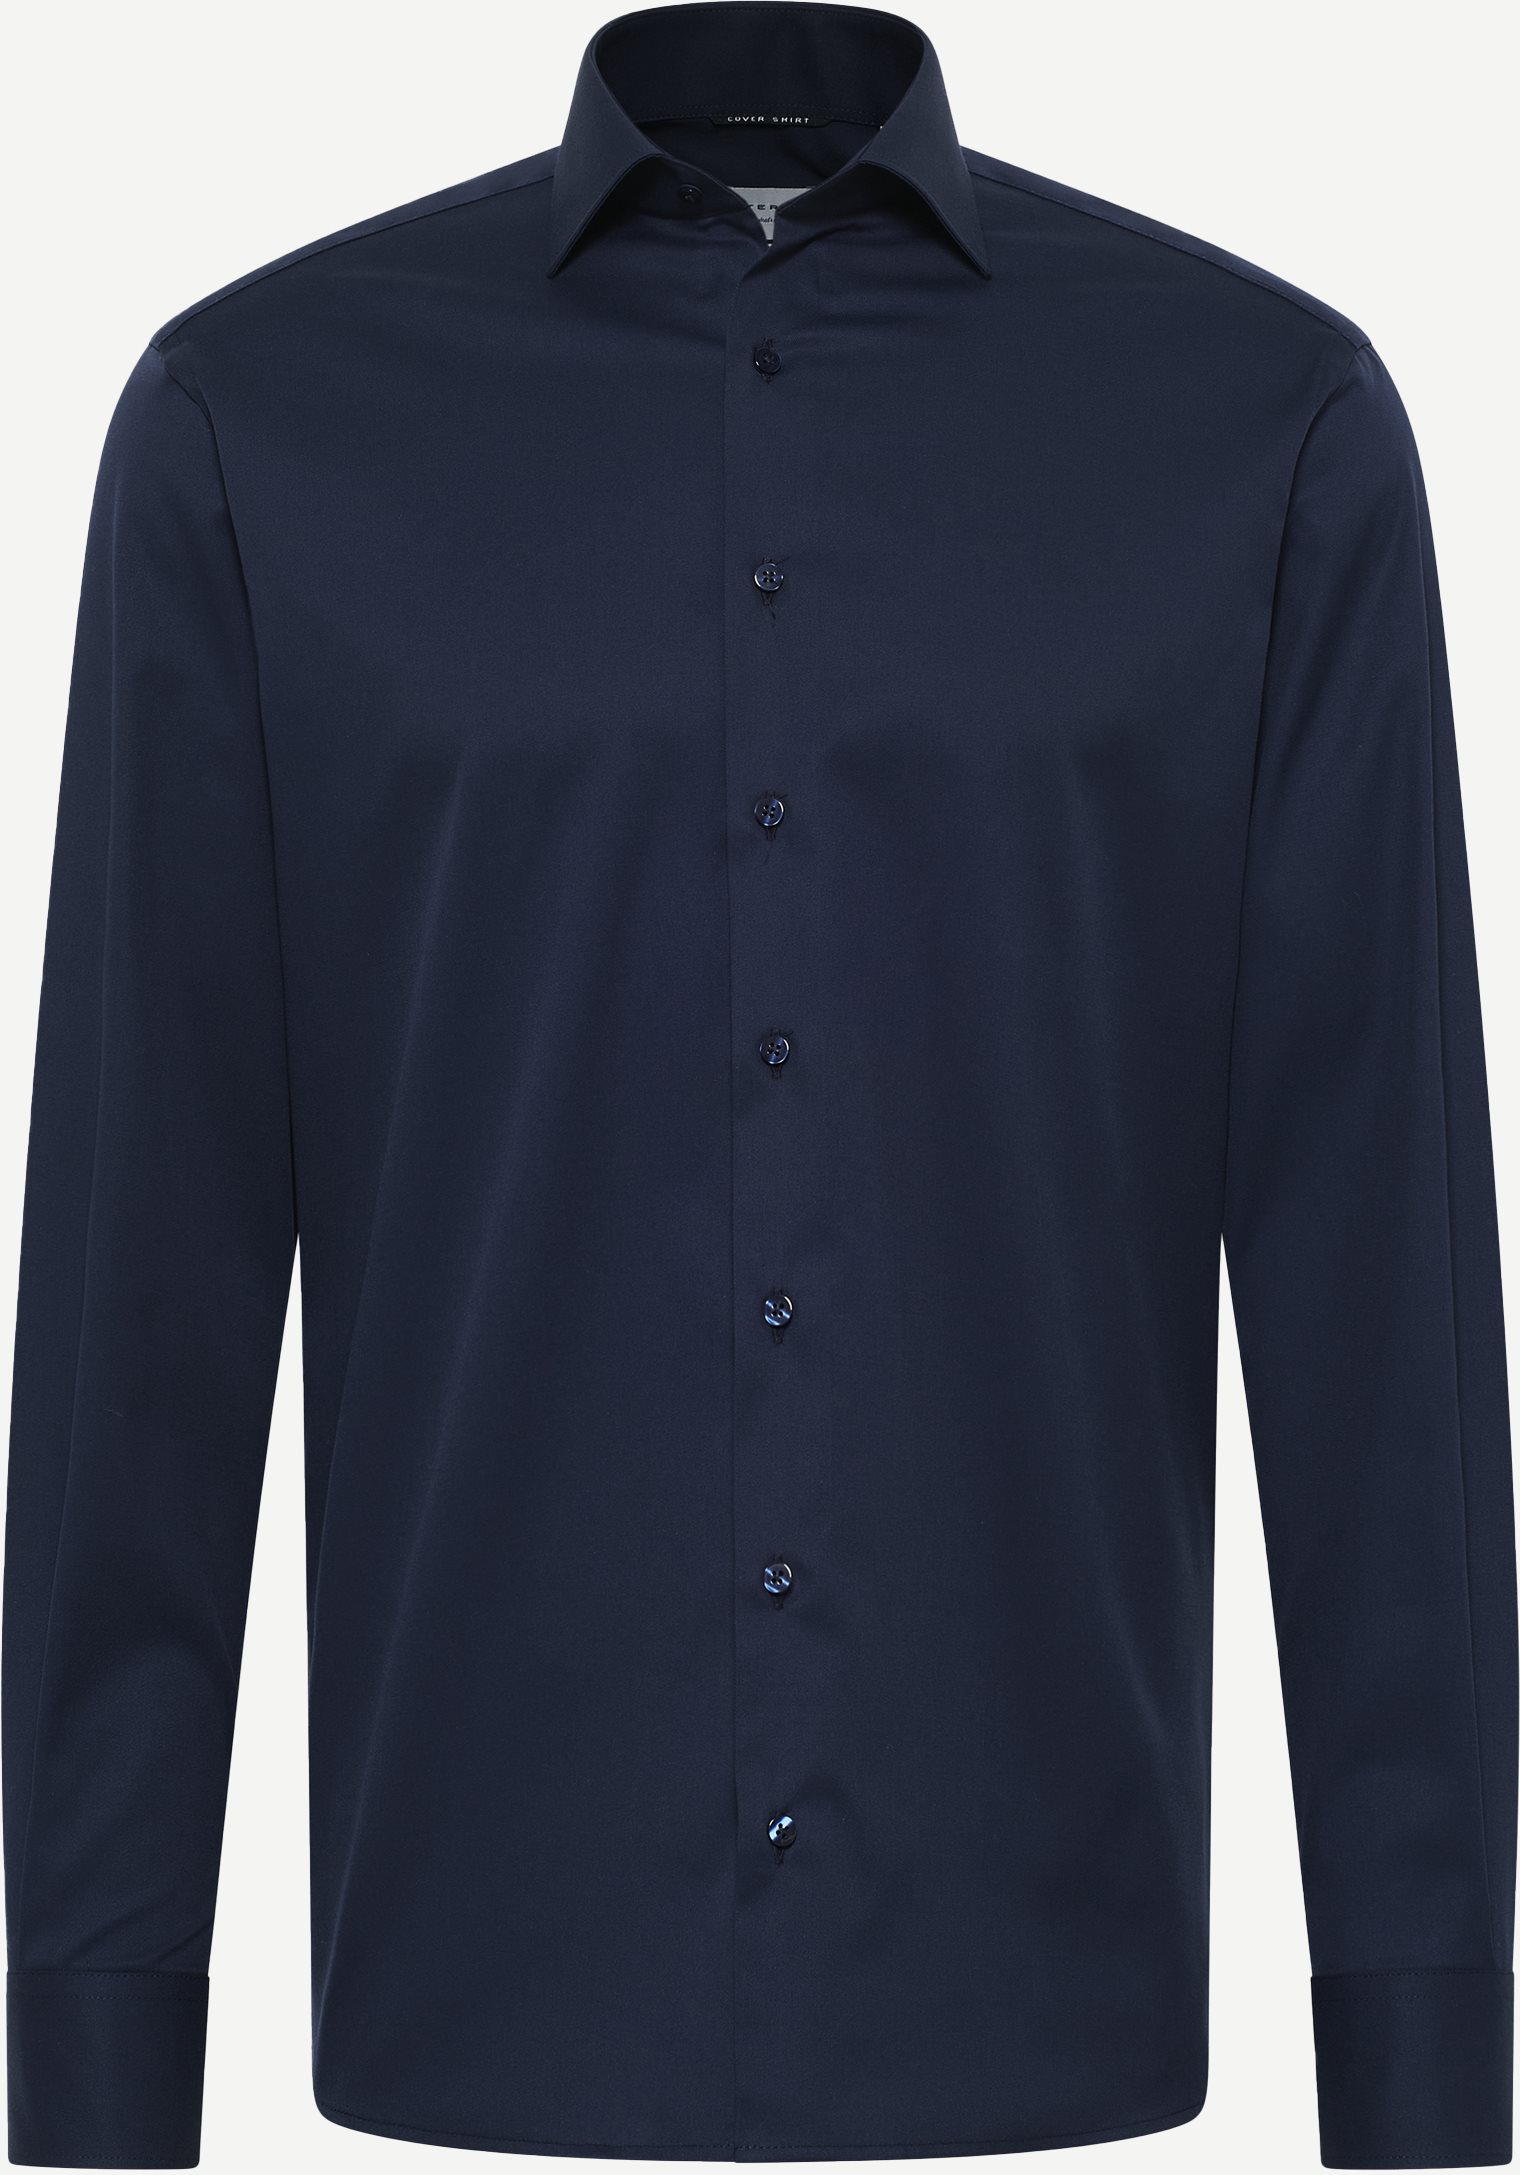 8817 Skjorte - Skjorter - Modern fit - Blå